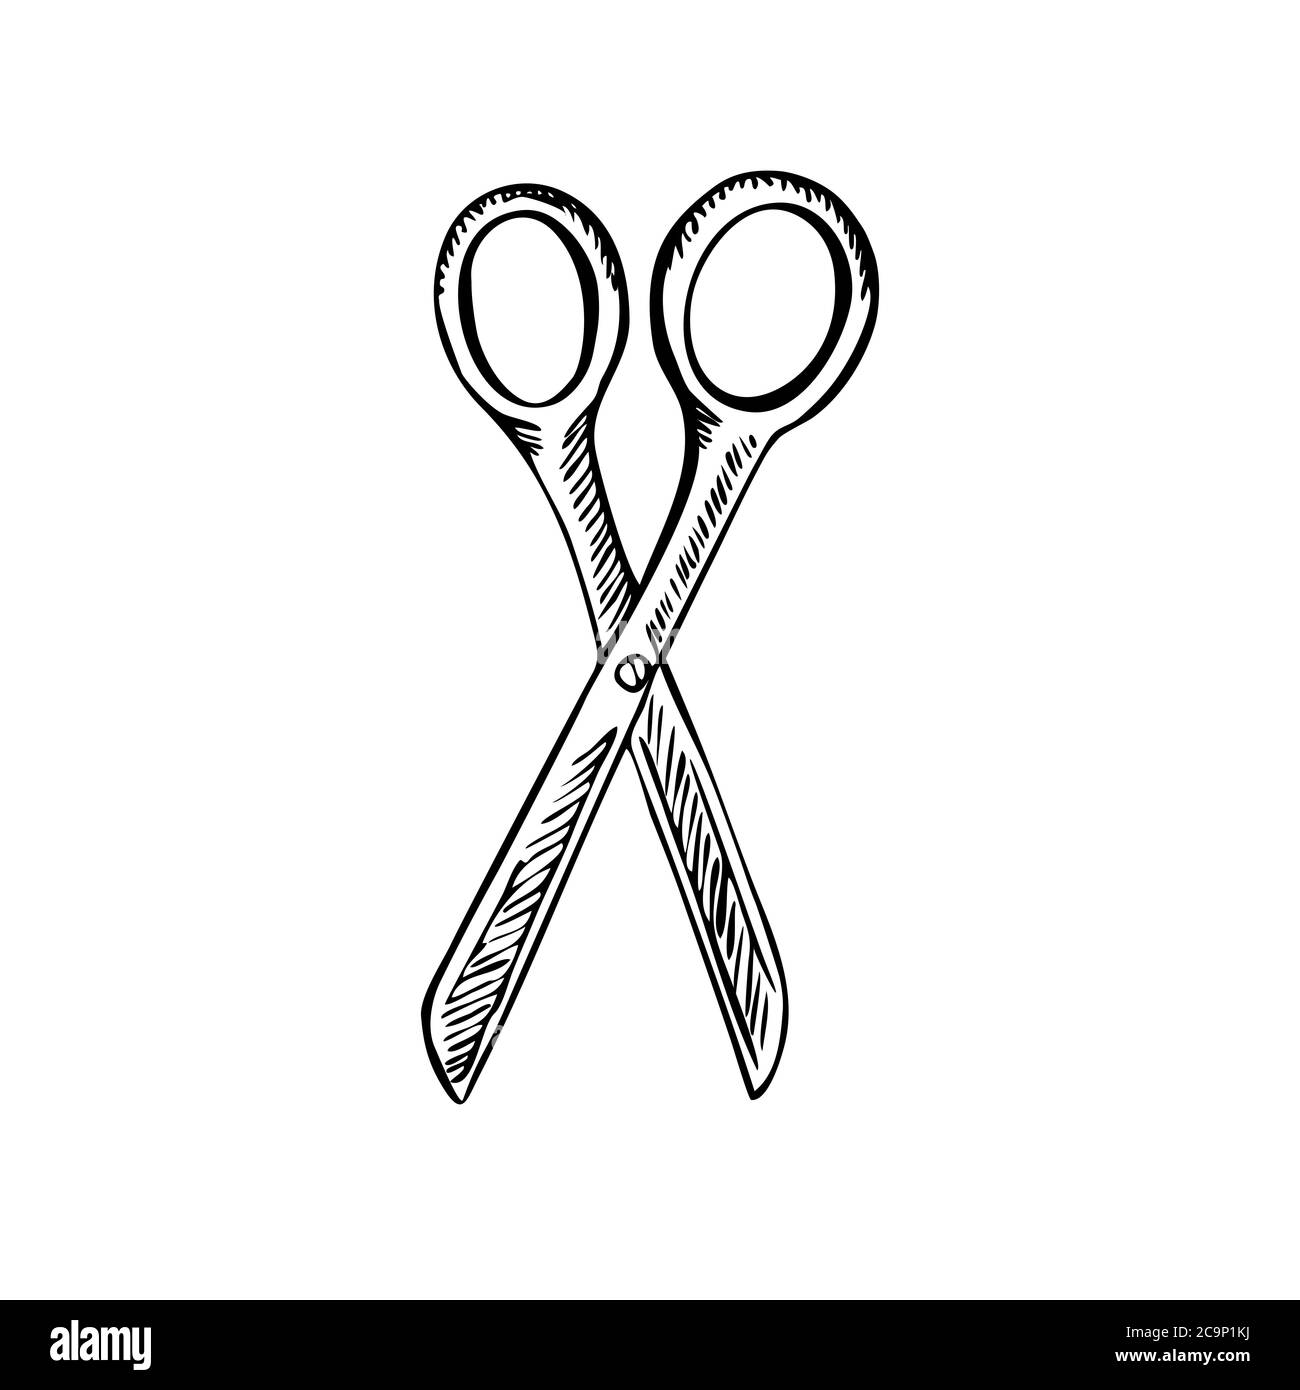 Scissors sketch icon Royalty Free Vector Image